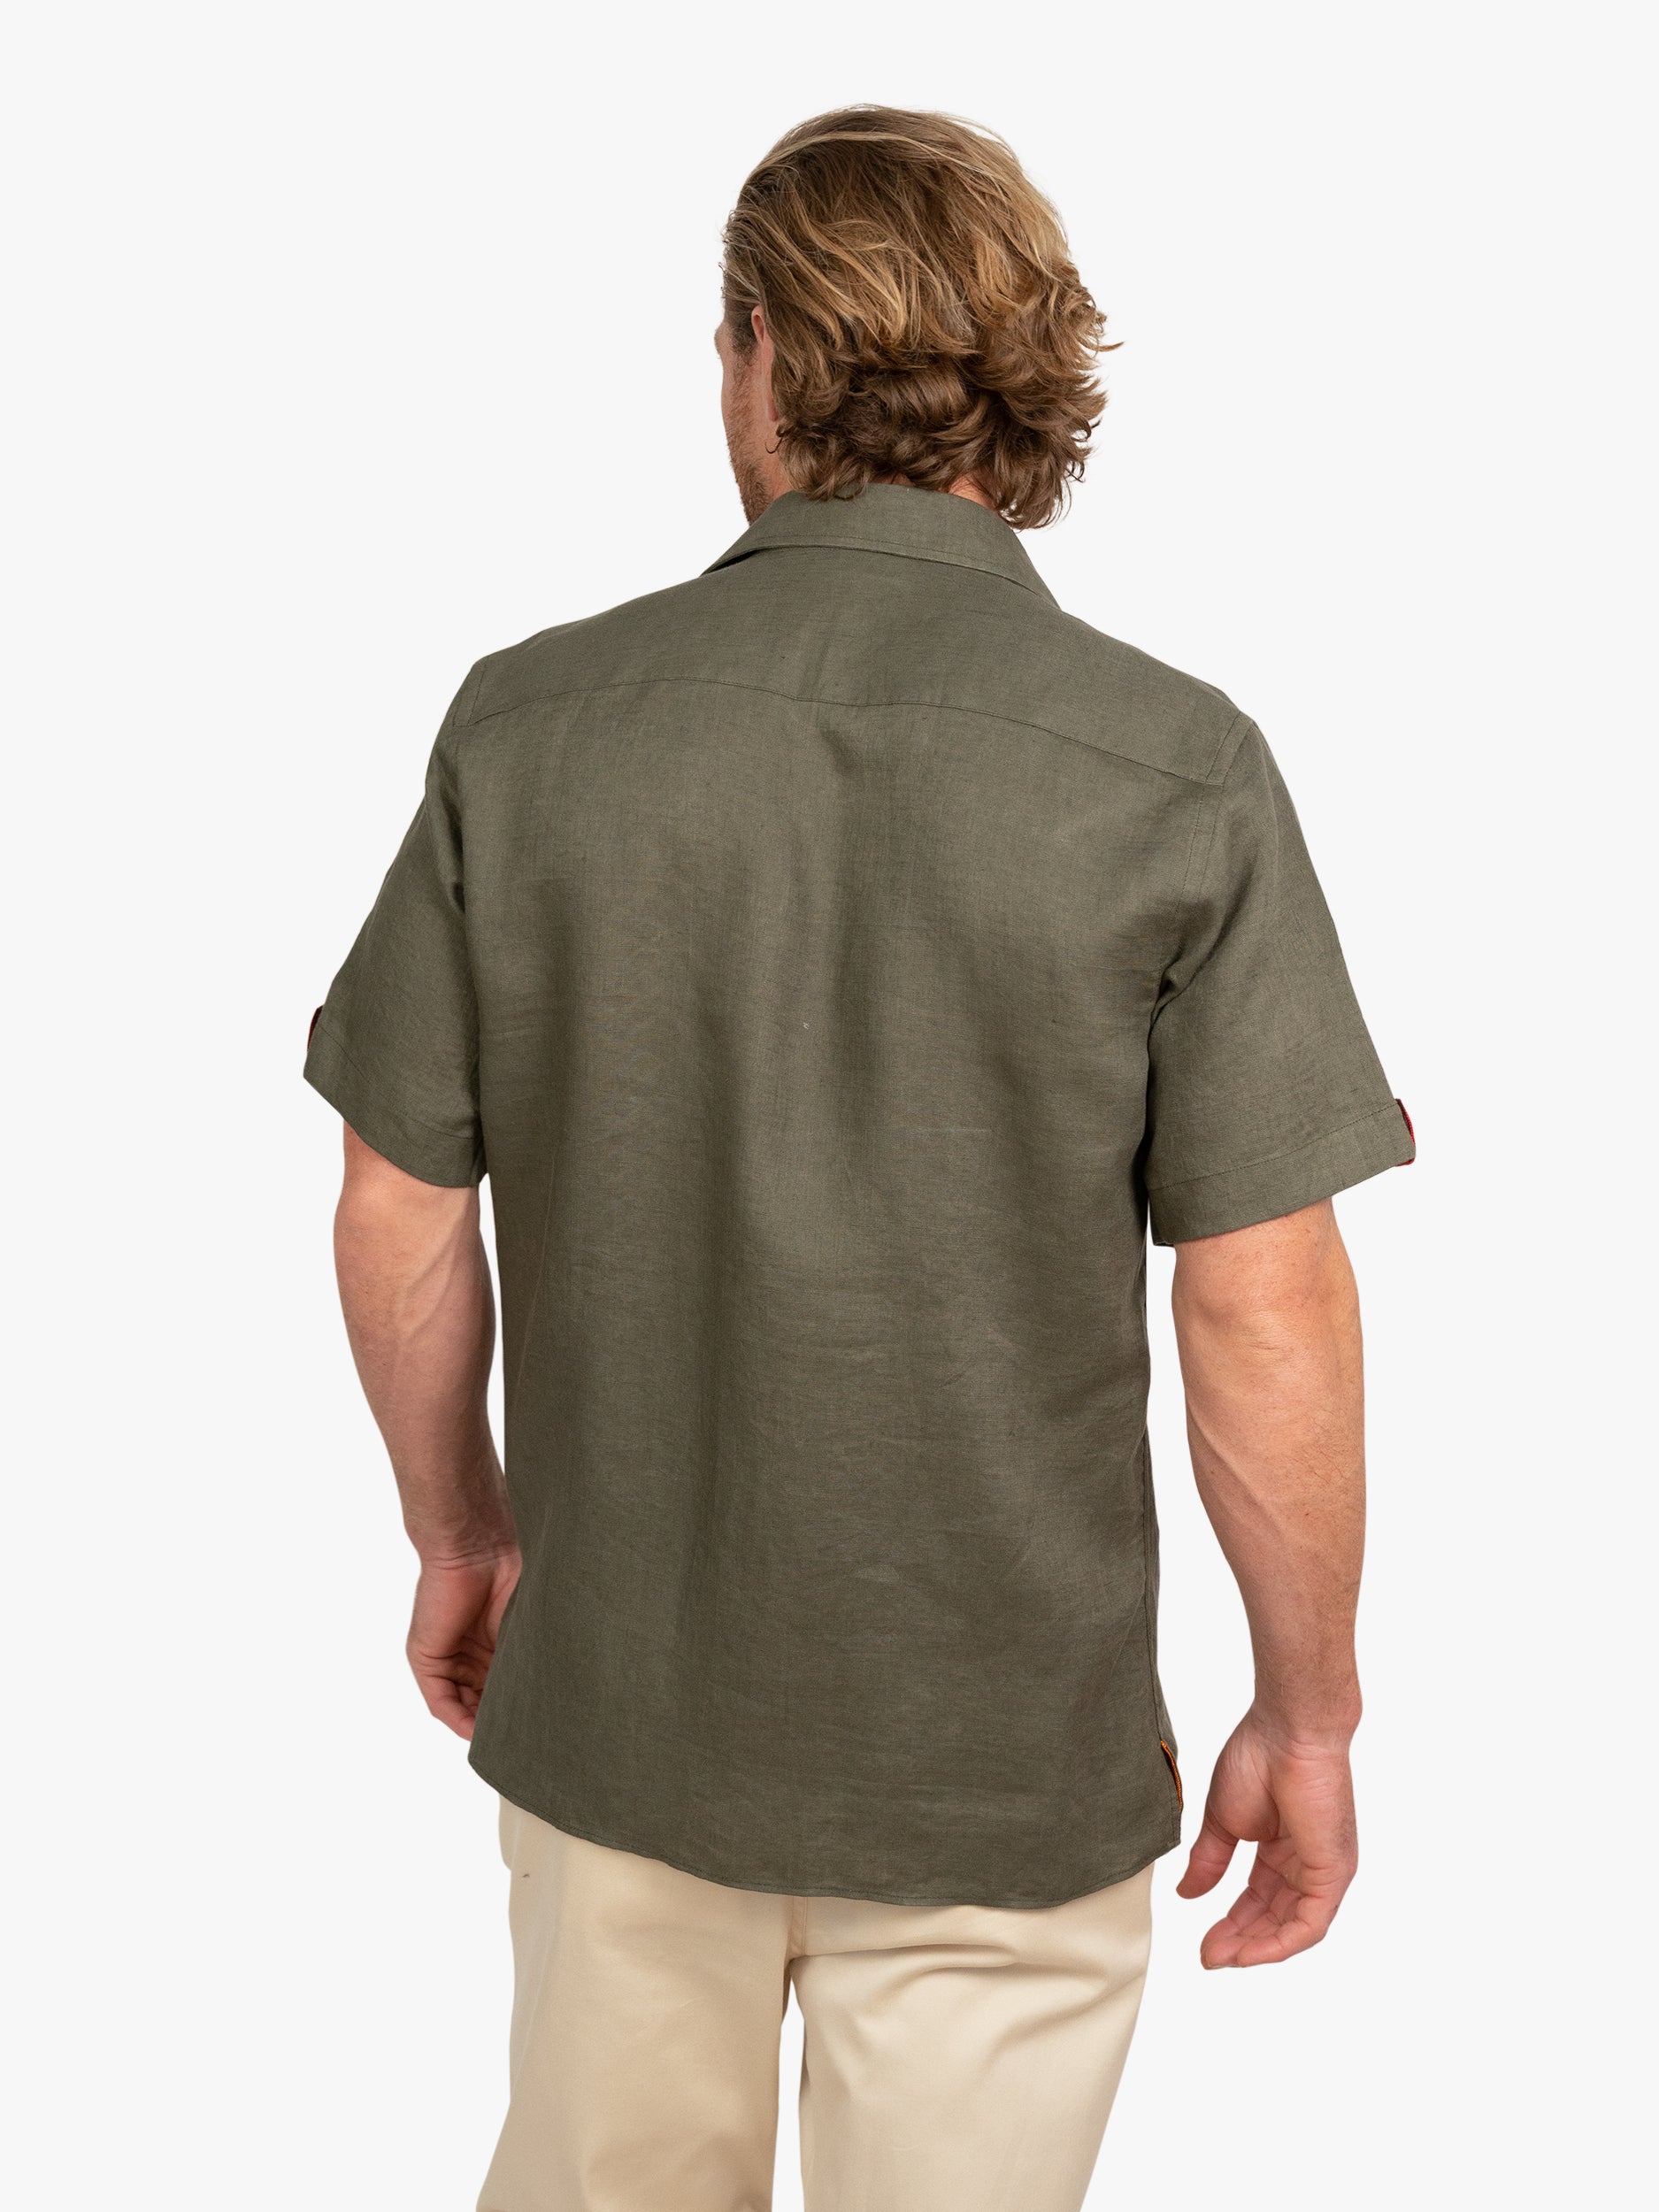 Koy Clothing Khaki Short Sleeve Linen Shirt